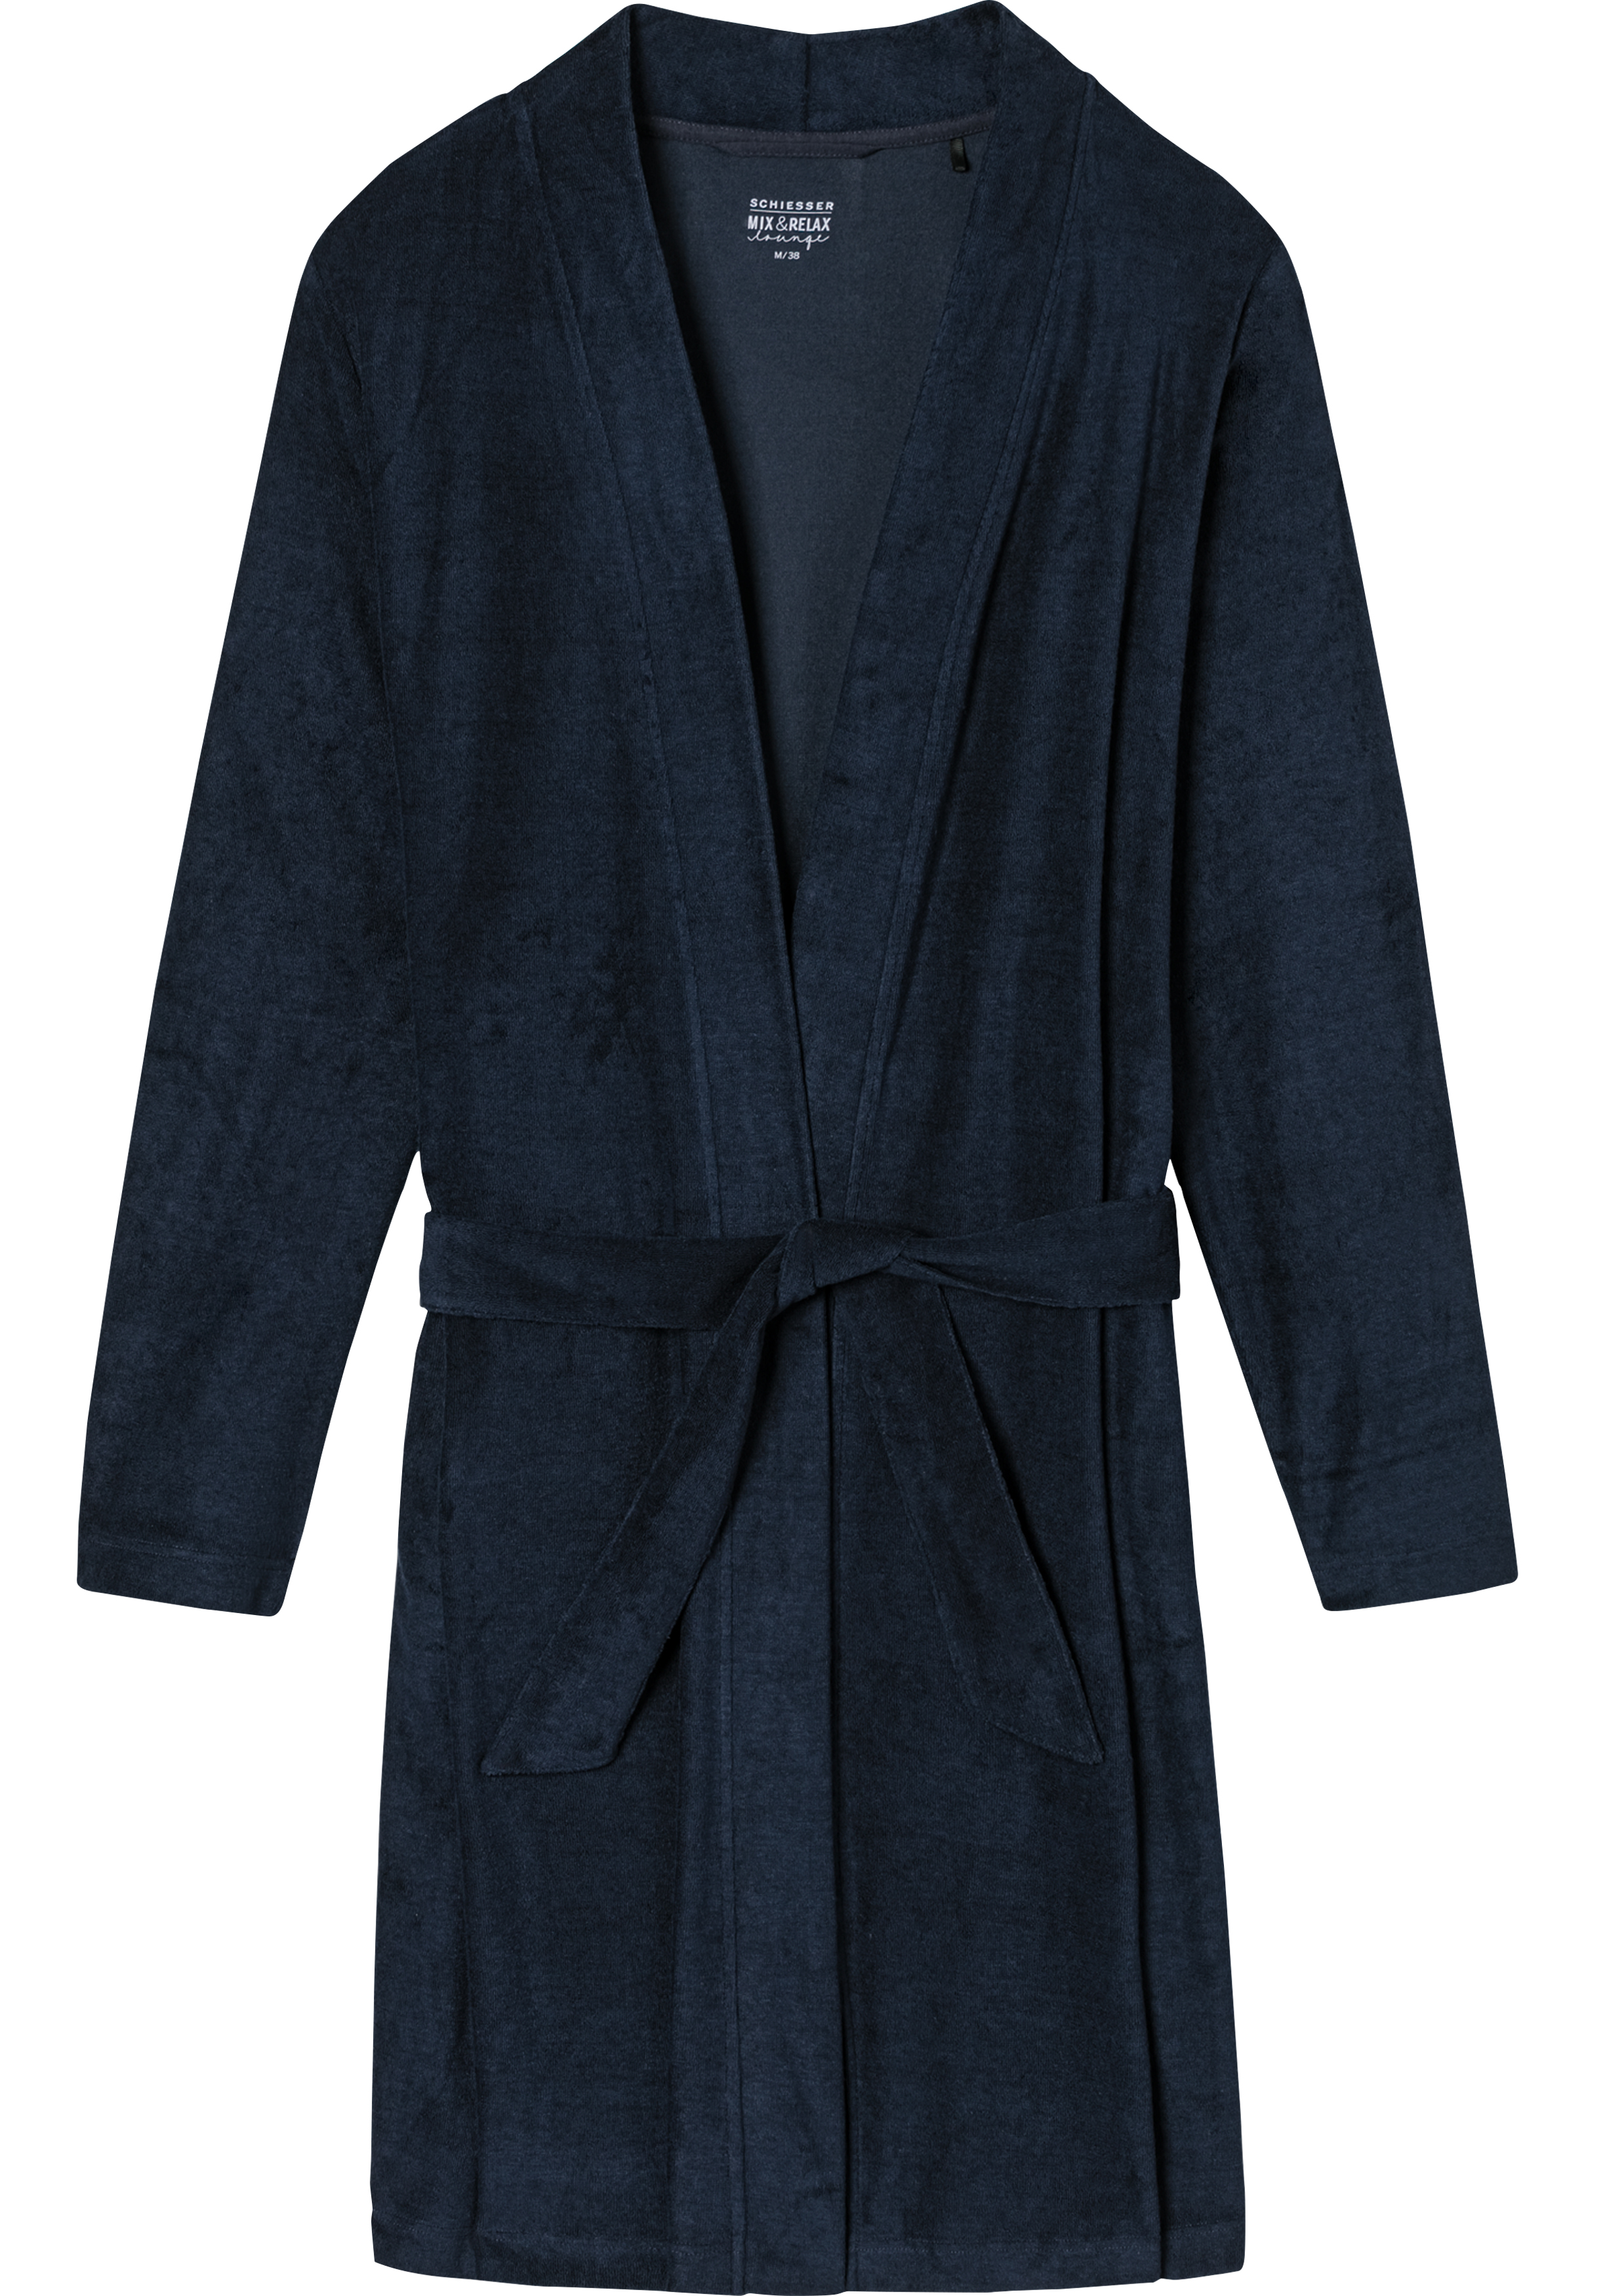 SCHIESSER dames badjas, kort model, dun badstof, donkerblauw